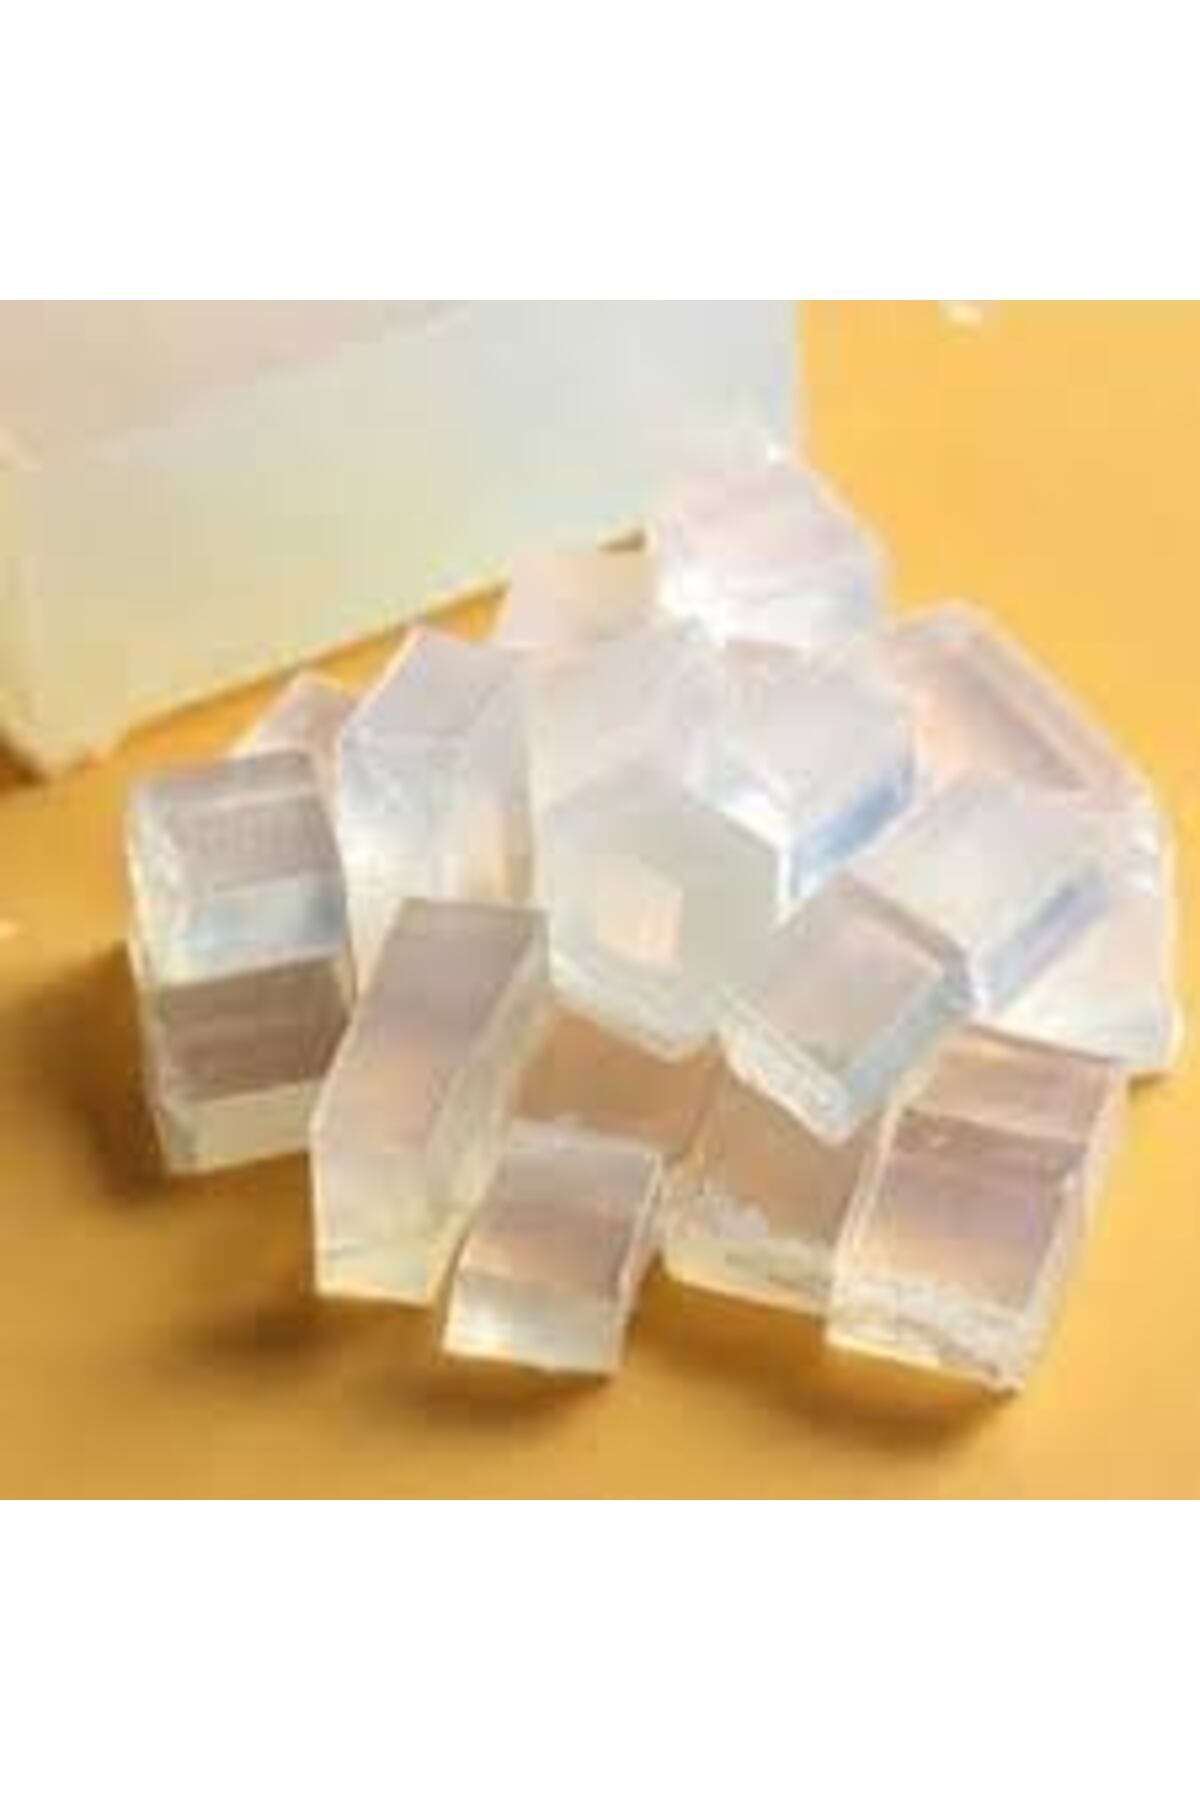 ADA NATUREL SOAP Eriyebilir Şeffaf Gliserinli Sabun Bazı ( 500 gram ) (0,5 Kg )